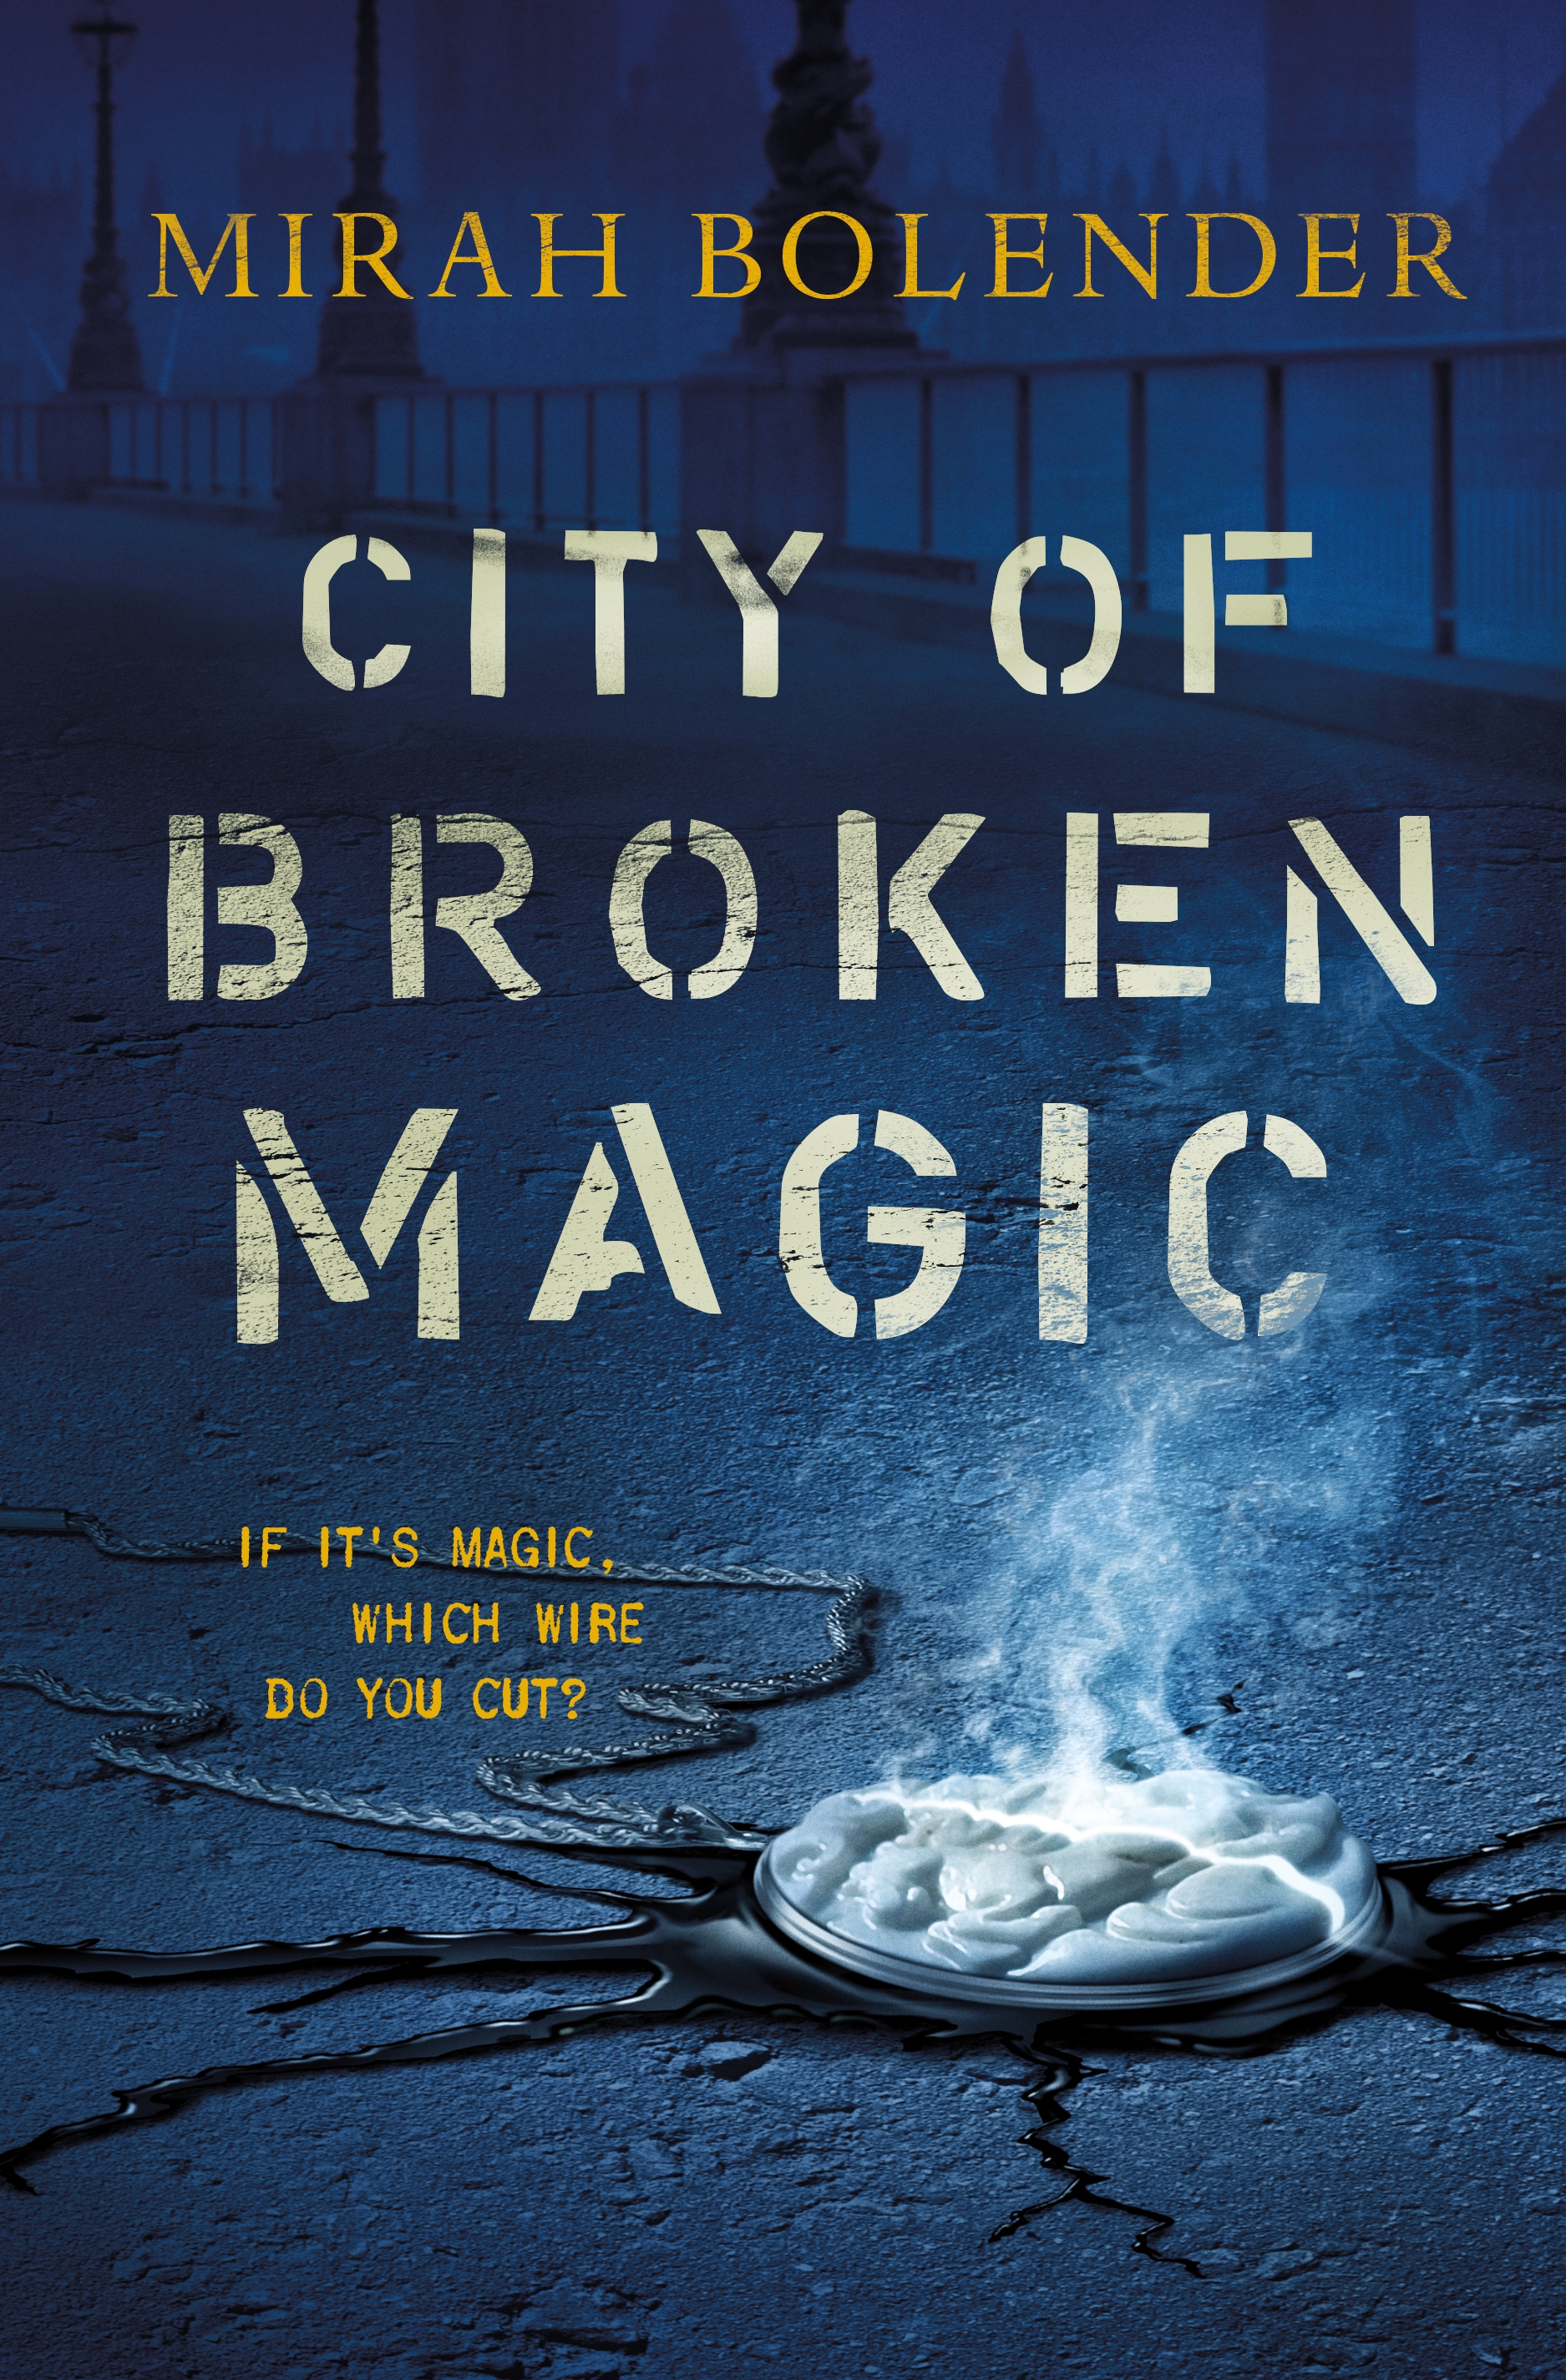 City of Broken Magic by Mirah Bolender